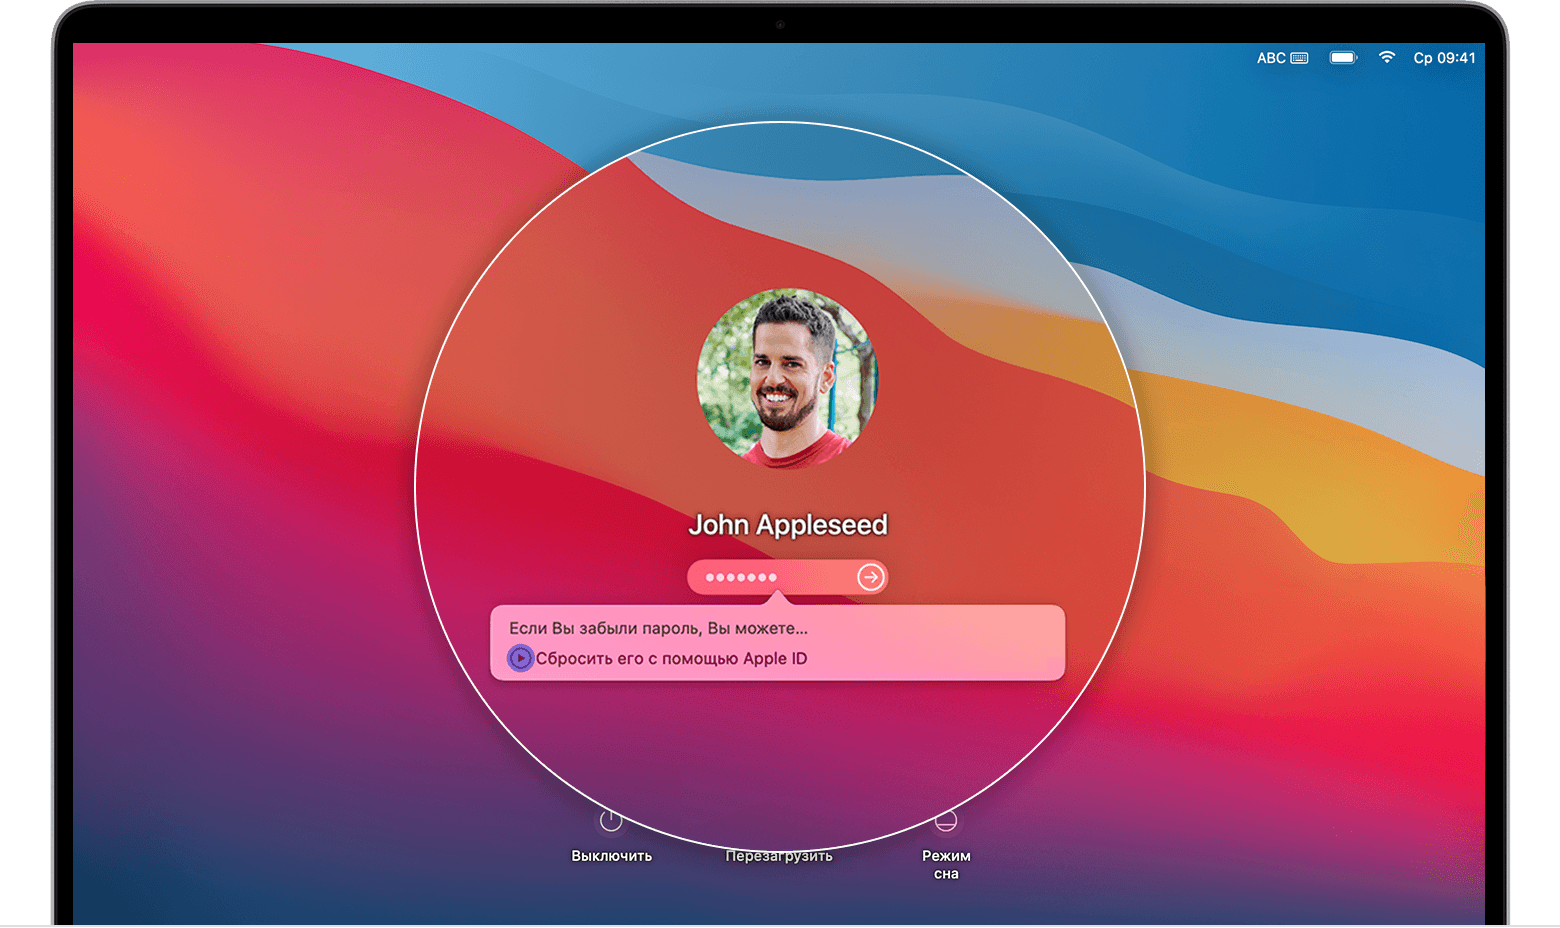 Диалоговое окно на экране входа в систему macOS Big Sur «Если вы забыли пароль, то можете восстановить его с помощью идентификатора Apple ID».